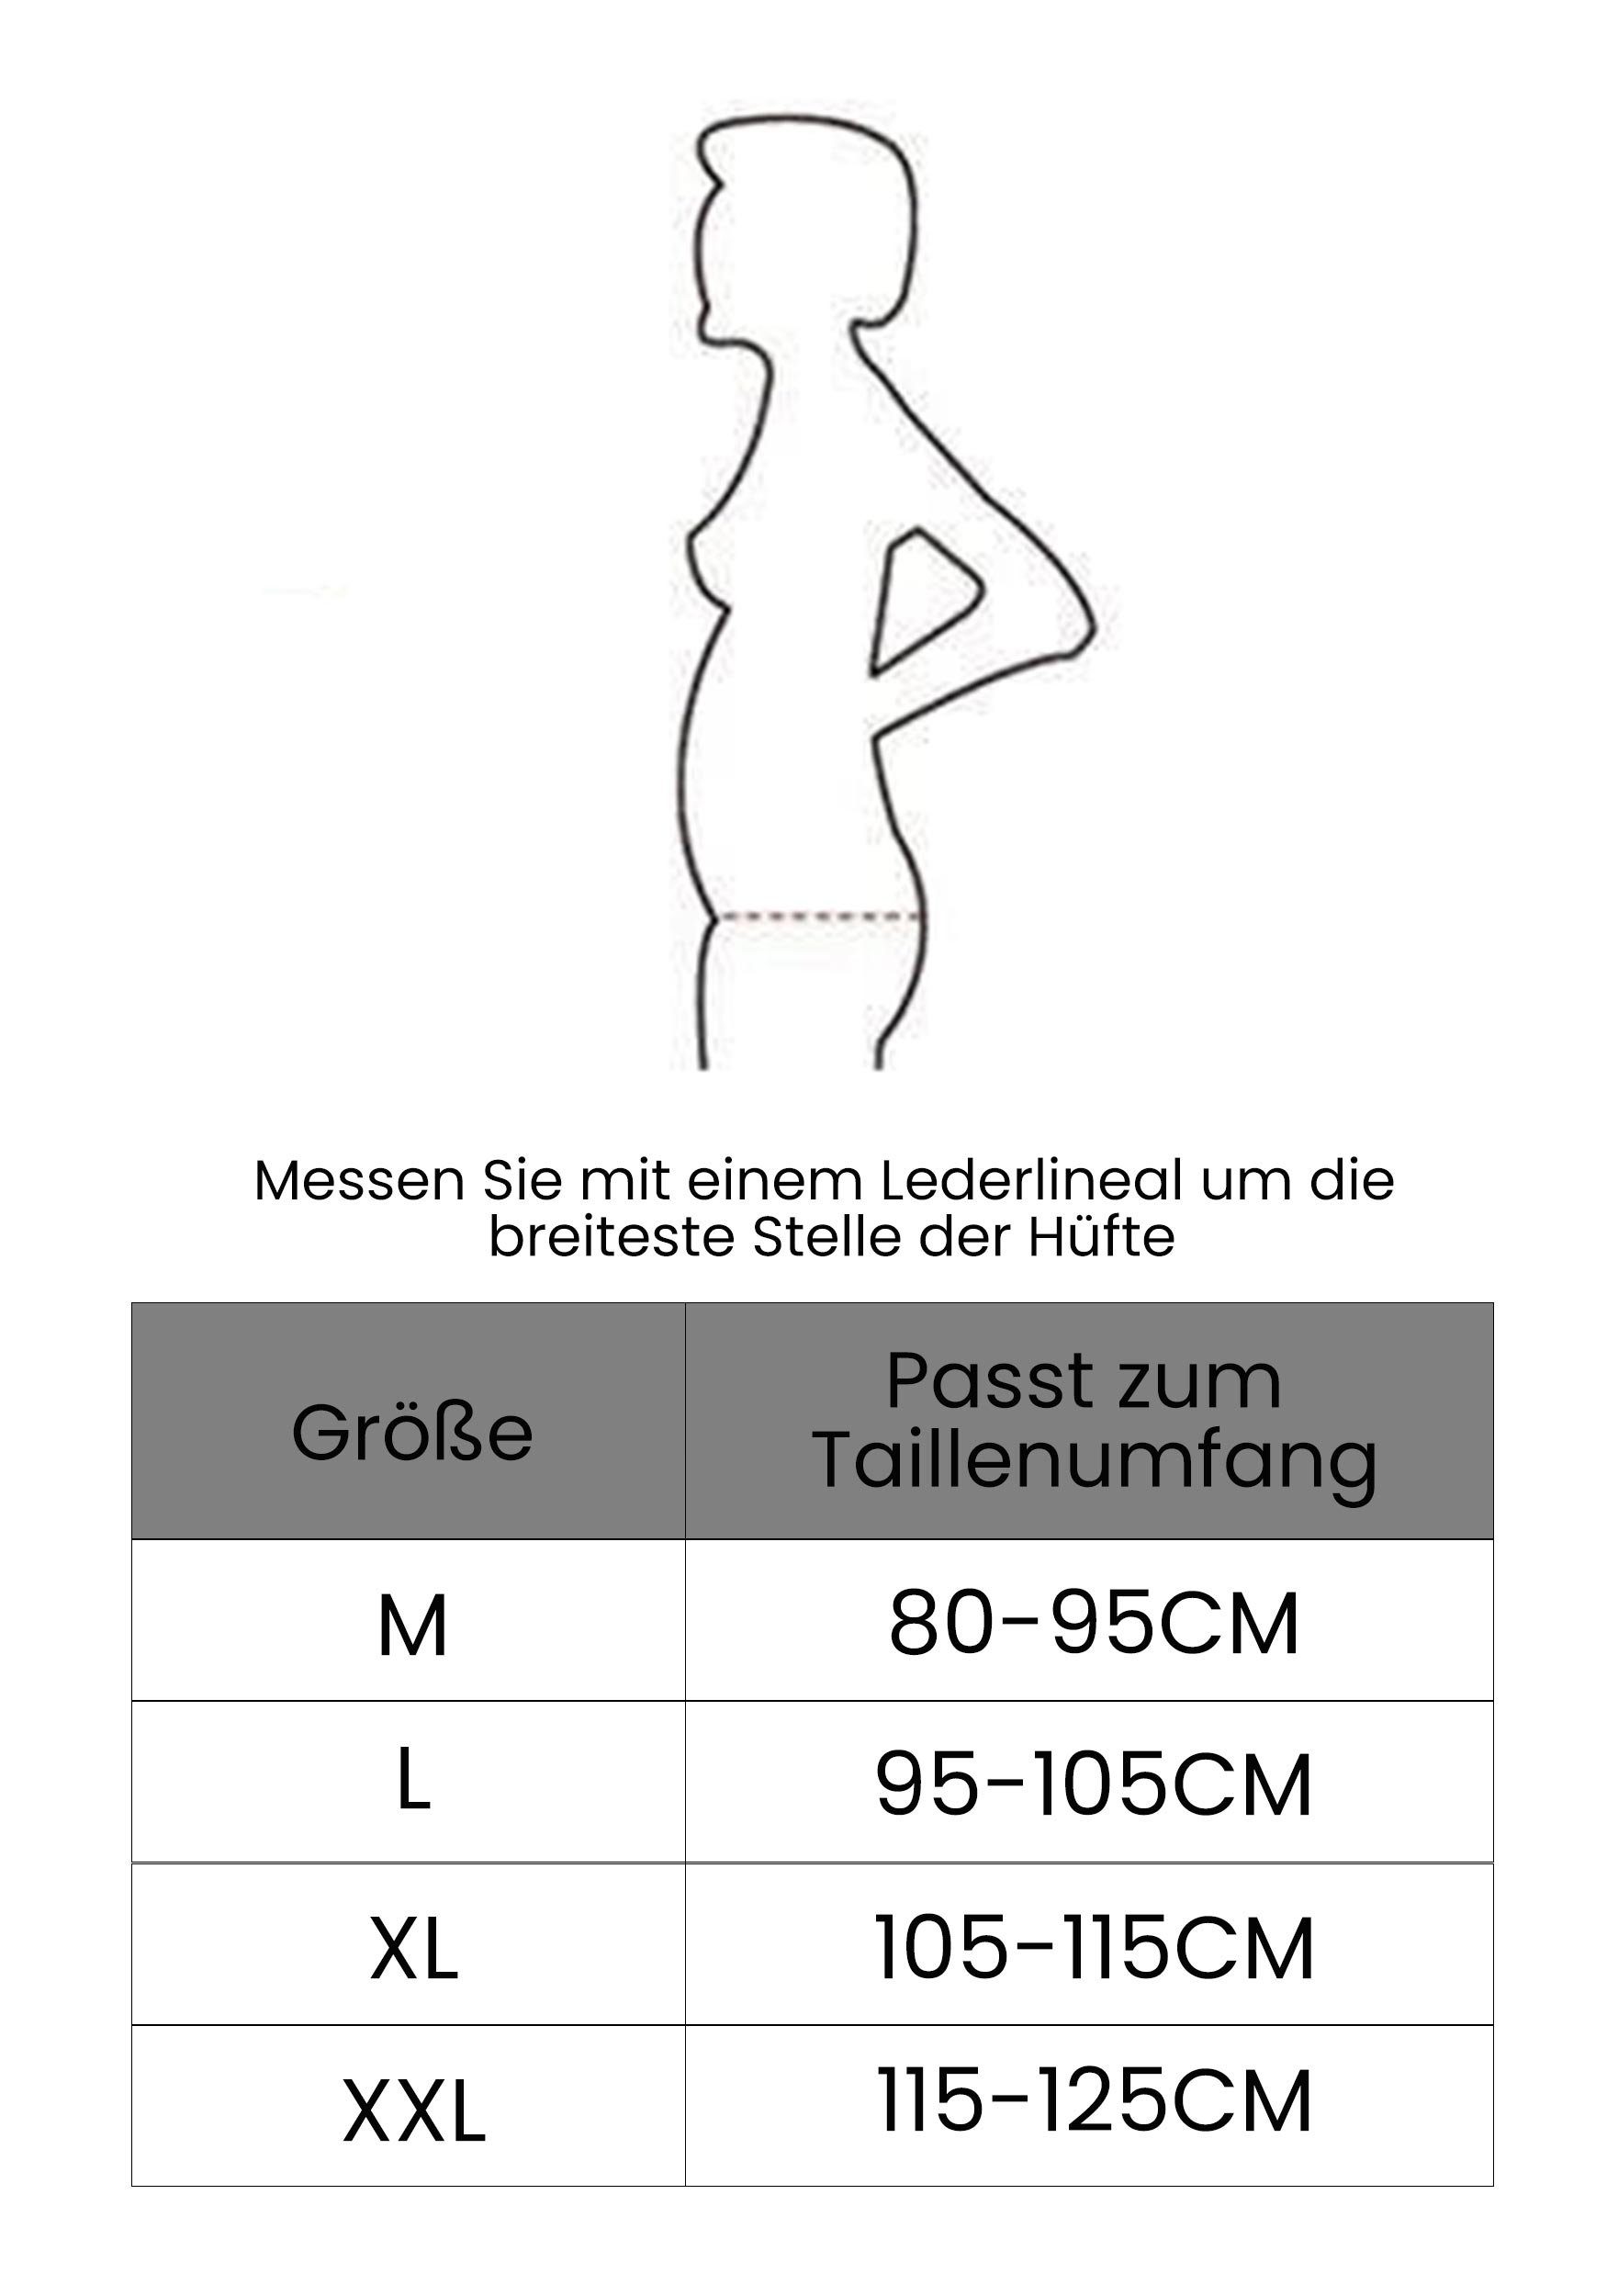 Stretch-Rückenstützgürtel Atmungsaktiver Schwangerschaftsgürtel MAGICSHE Beige